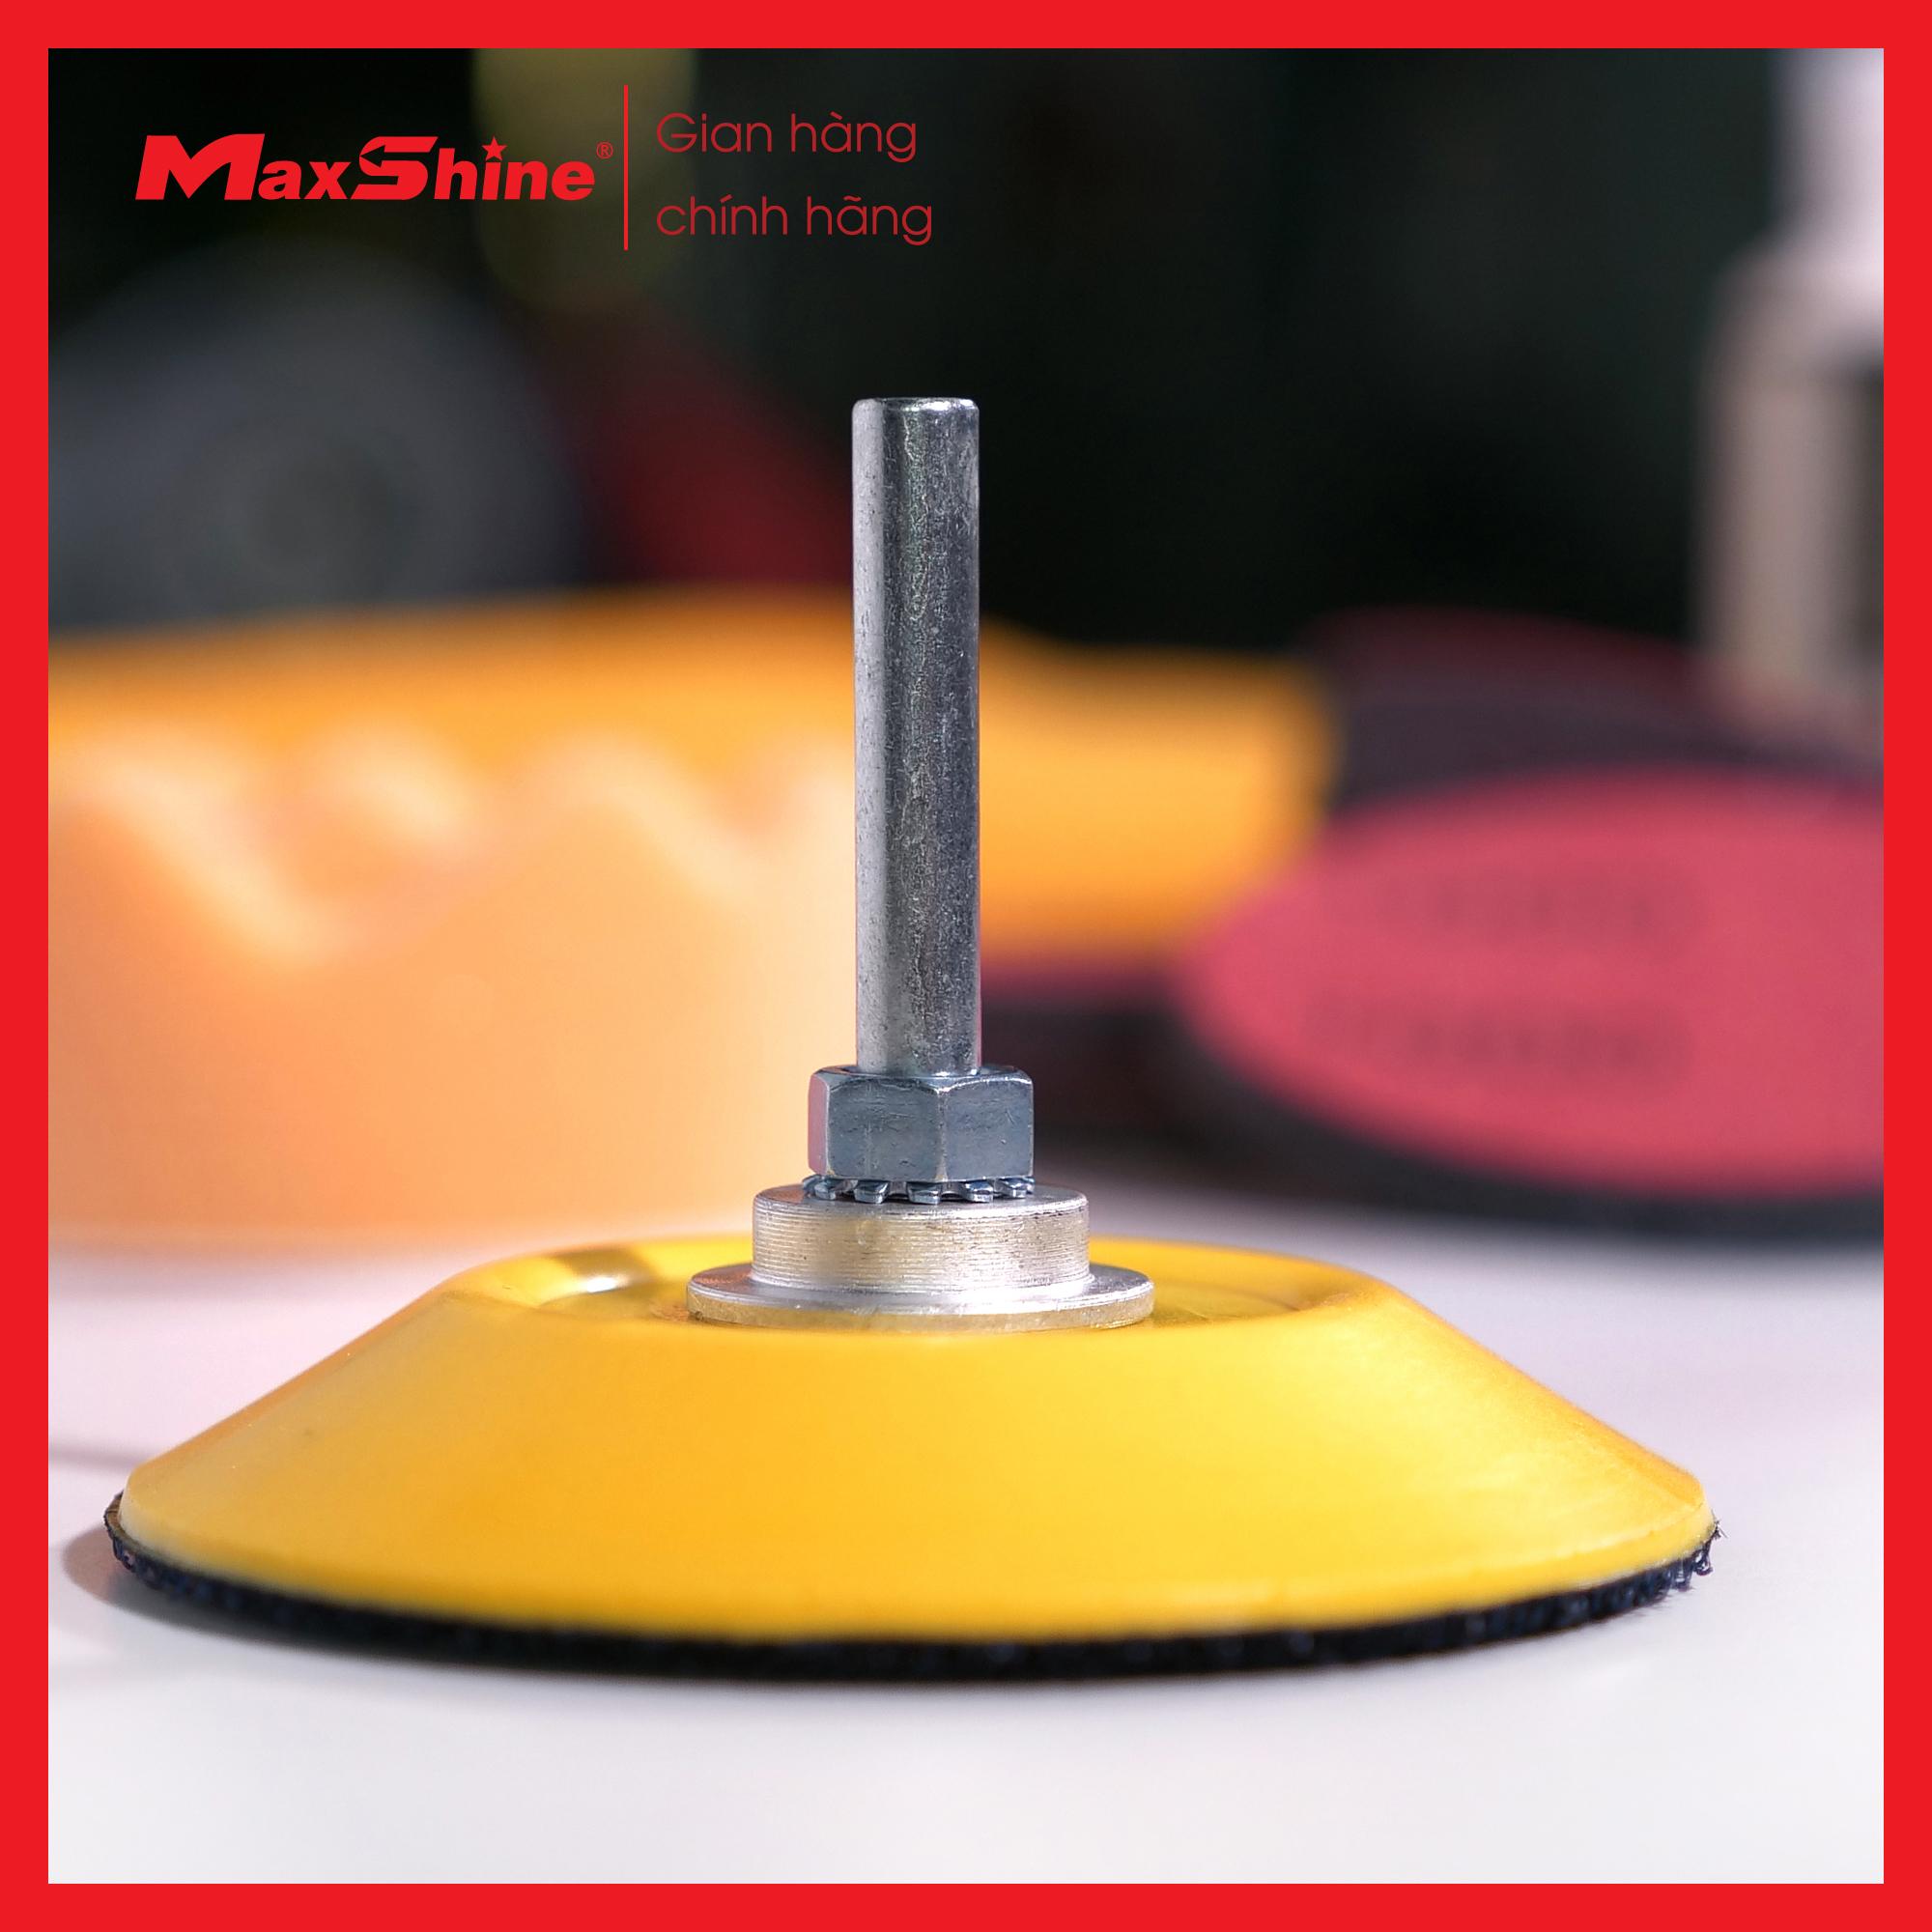 Bộ phục hồi đèn pha Maxshine MHL01 là tập hợp các sản phẩm chuyên nghiệp được lắp ráp đặc biệt để phục hồi, bảo trì và bảo vệ tất cả các loại đèn pha bằng nhựa và acrylic nhẵn, sáng bóng một cách nhanh chóng và an toàn